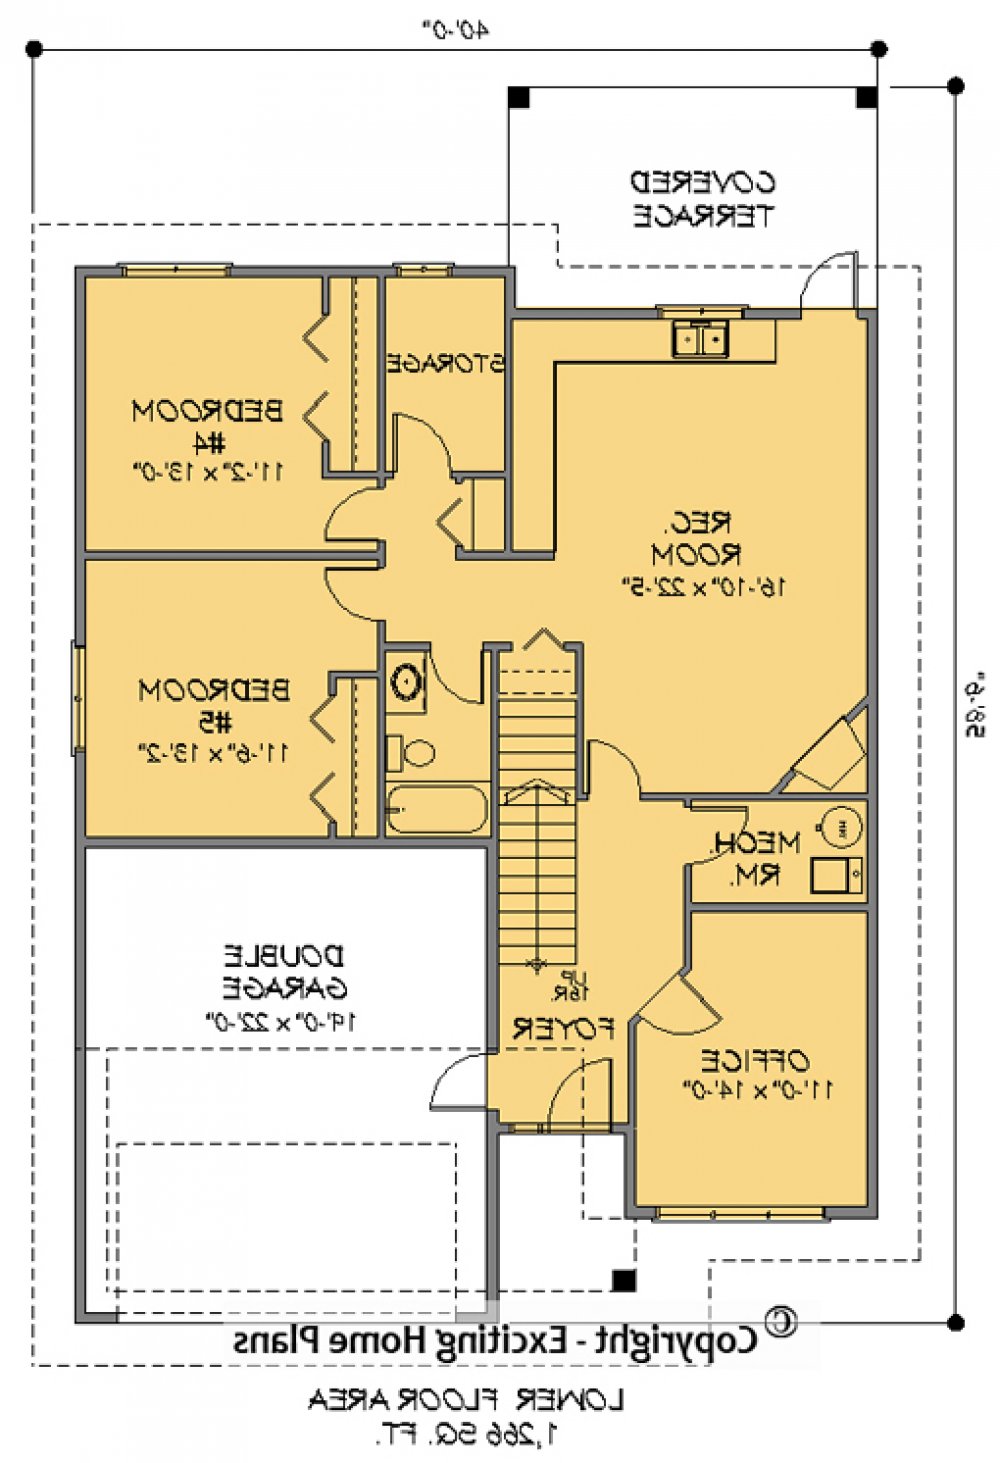 House Plan E1091-10 Lower Floor Plan REVERSE